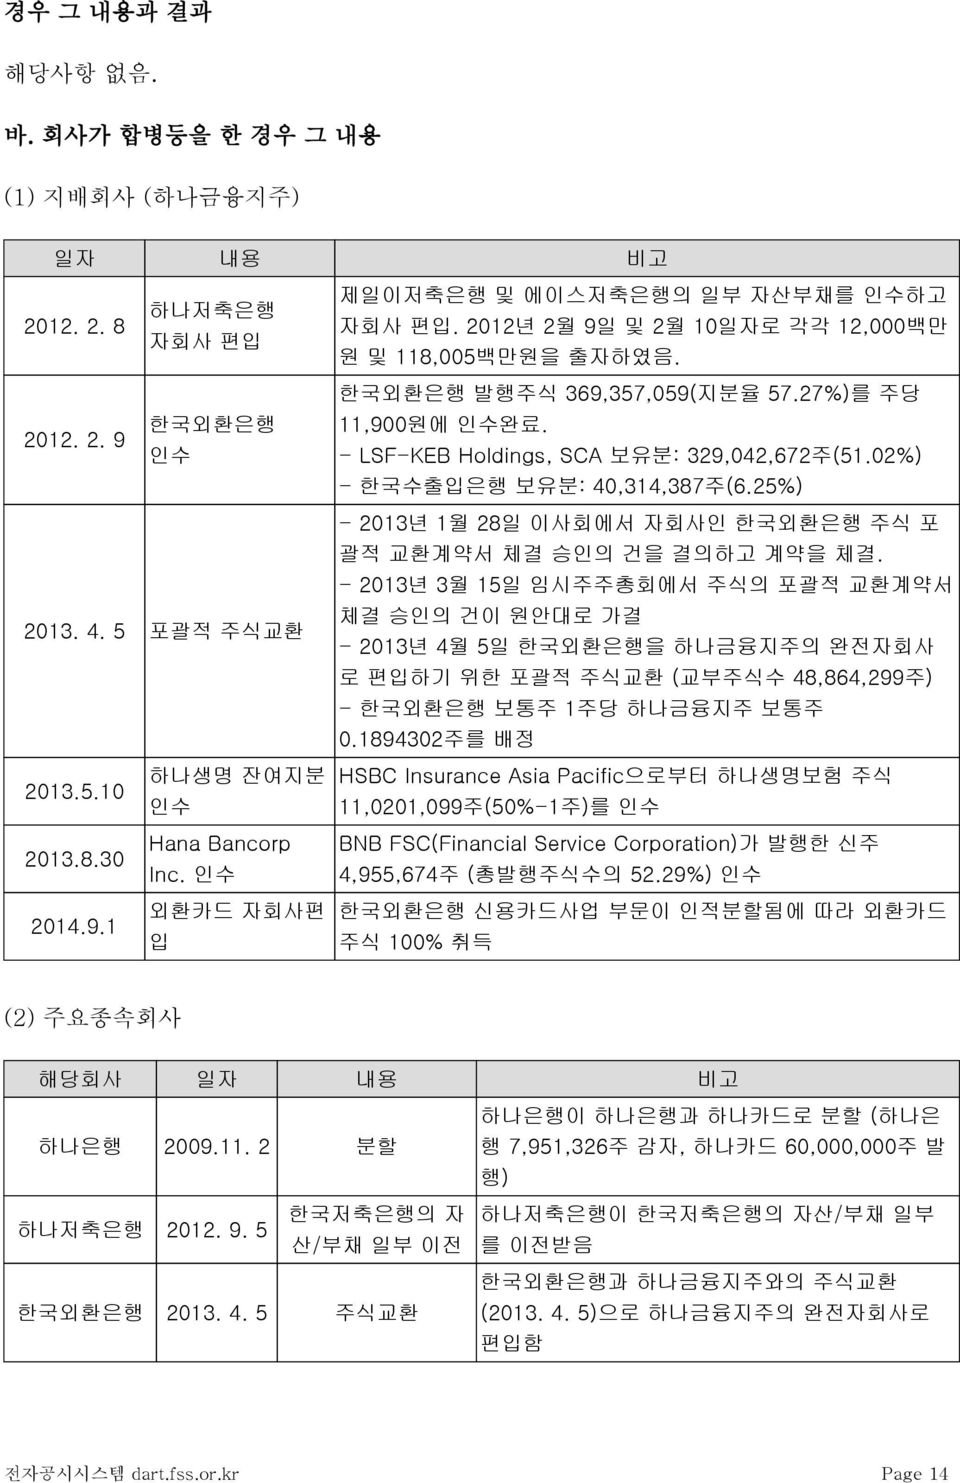 25%) - 2013년 1월 28일 이사회에서 자회사인 한국외환은행 주식 포 괄적 교환계약서 체결 승인의 건을 결의하고 계약을 체결.